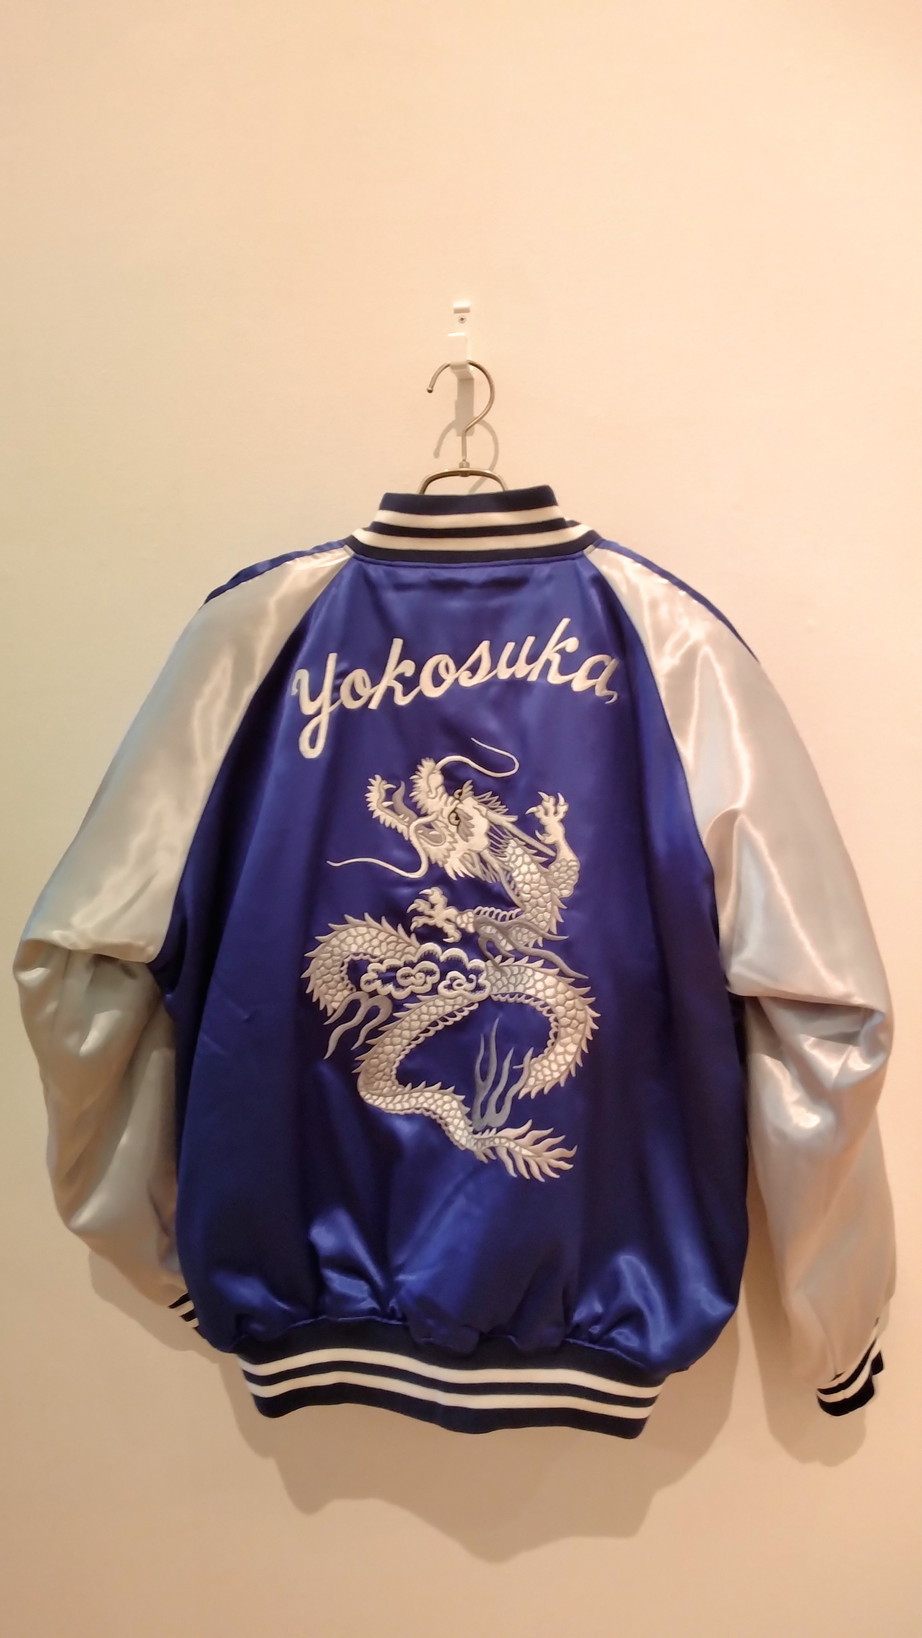 PRIDE OF YOKOSUKA　スカジャン展@横須賀美術館に行ってきた！_c0002171_15181403.jpg